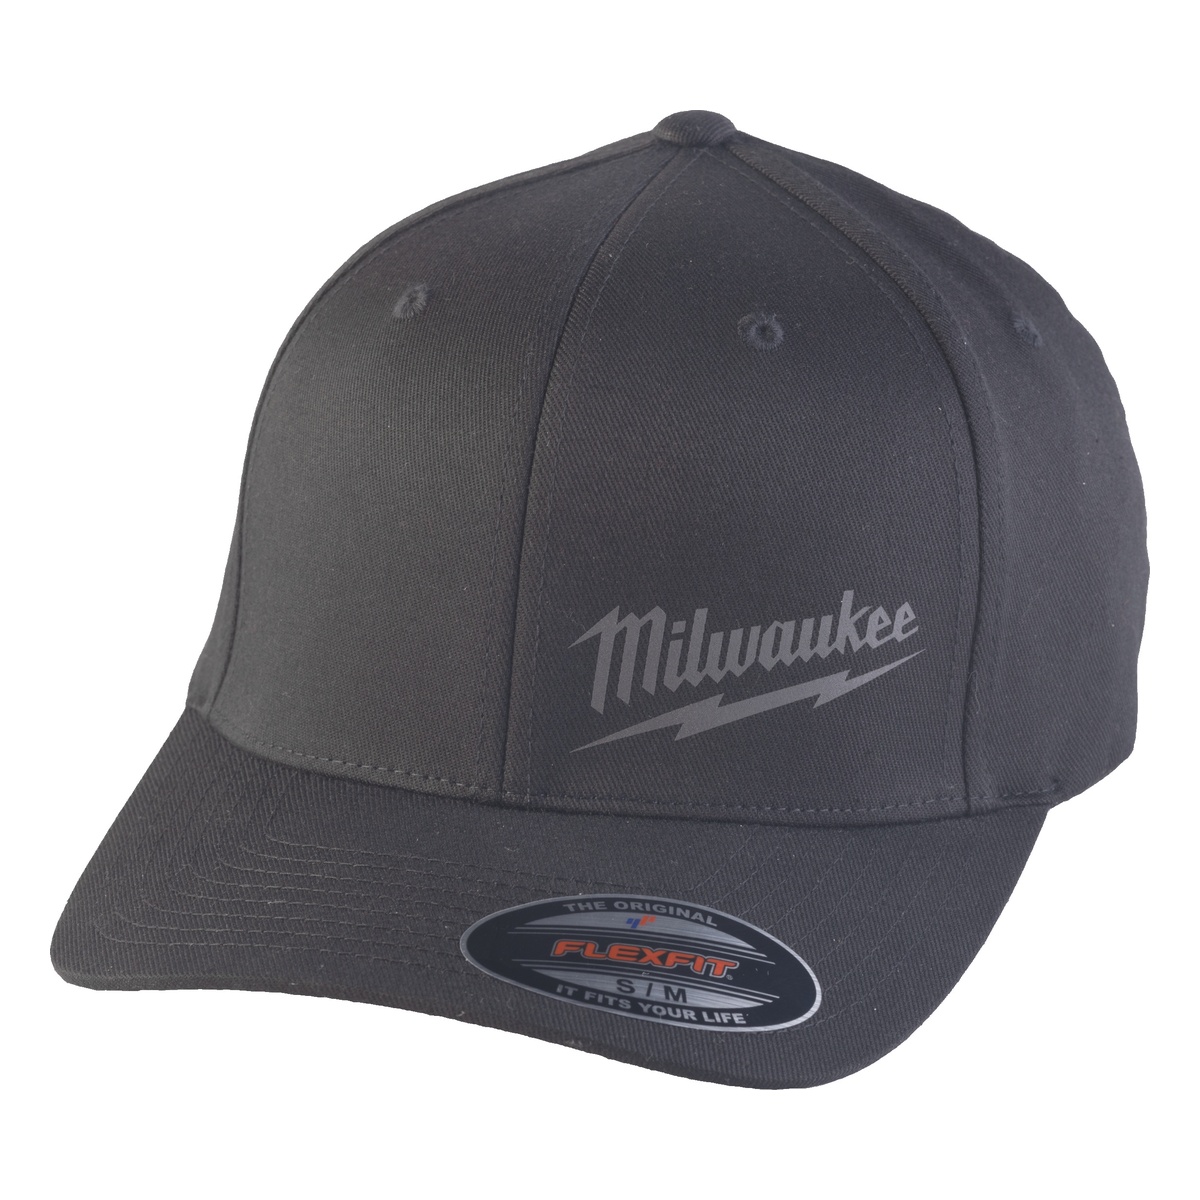 Milwaukee Baseball Kappe schwarz Größe S/M mit UV-Schutz BCSBL-S/M - 1 Stk.